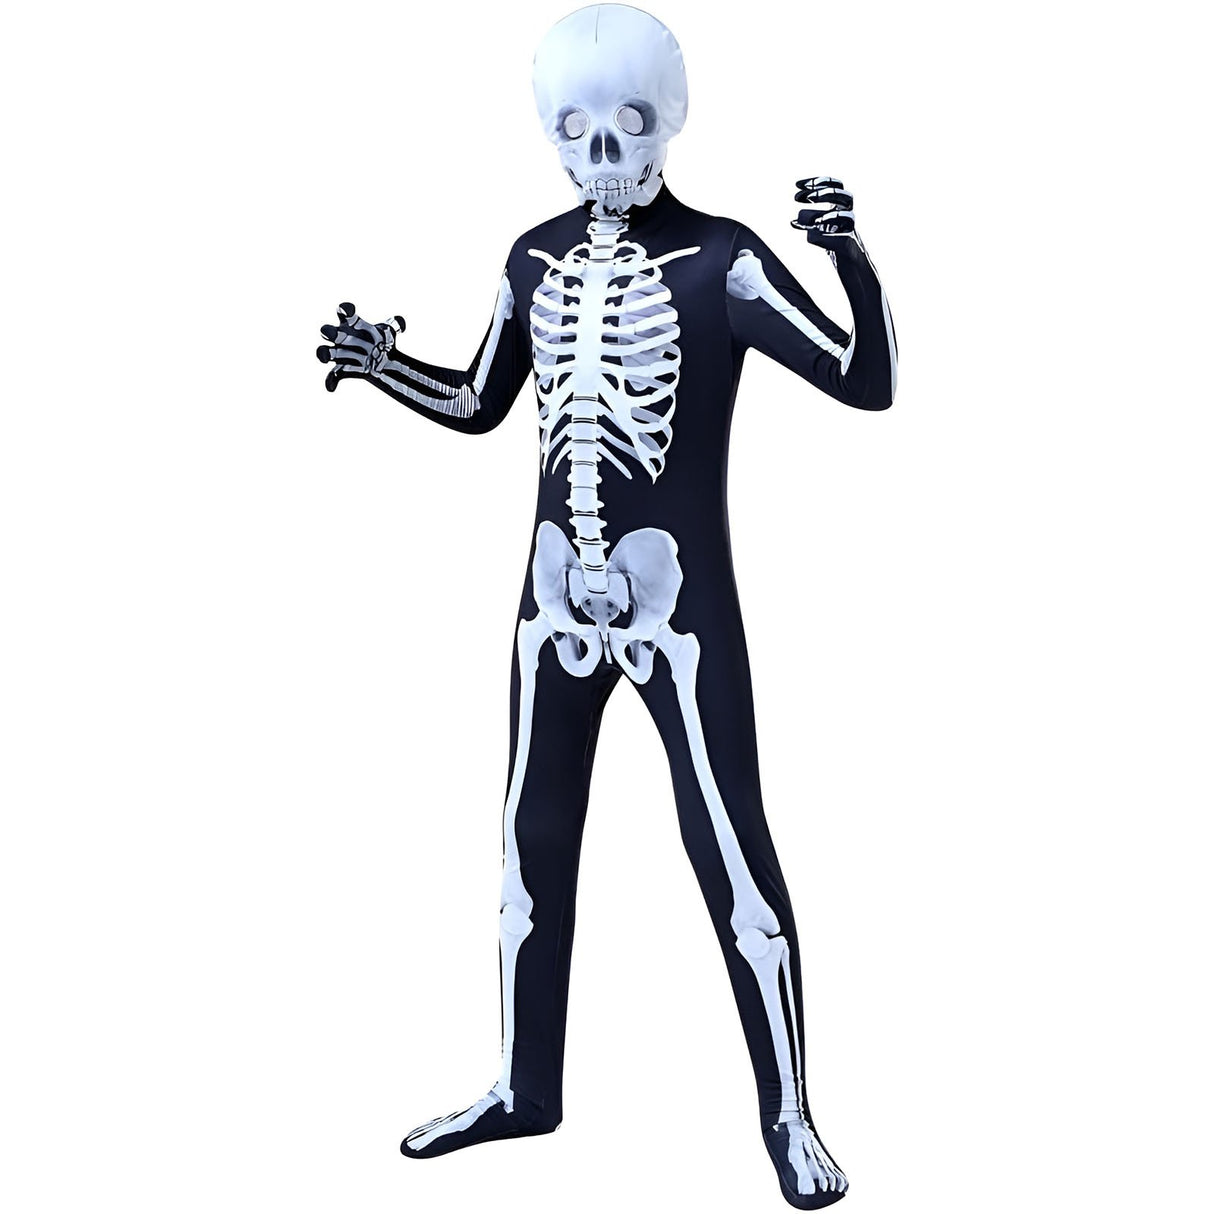 Halloween Playful Skeleton Bodysuit